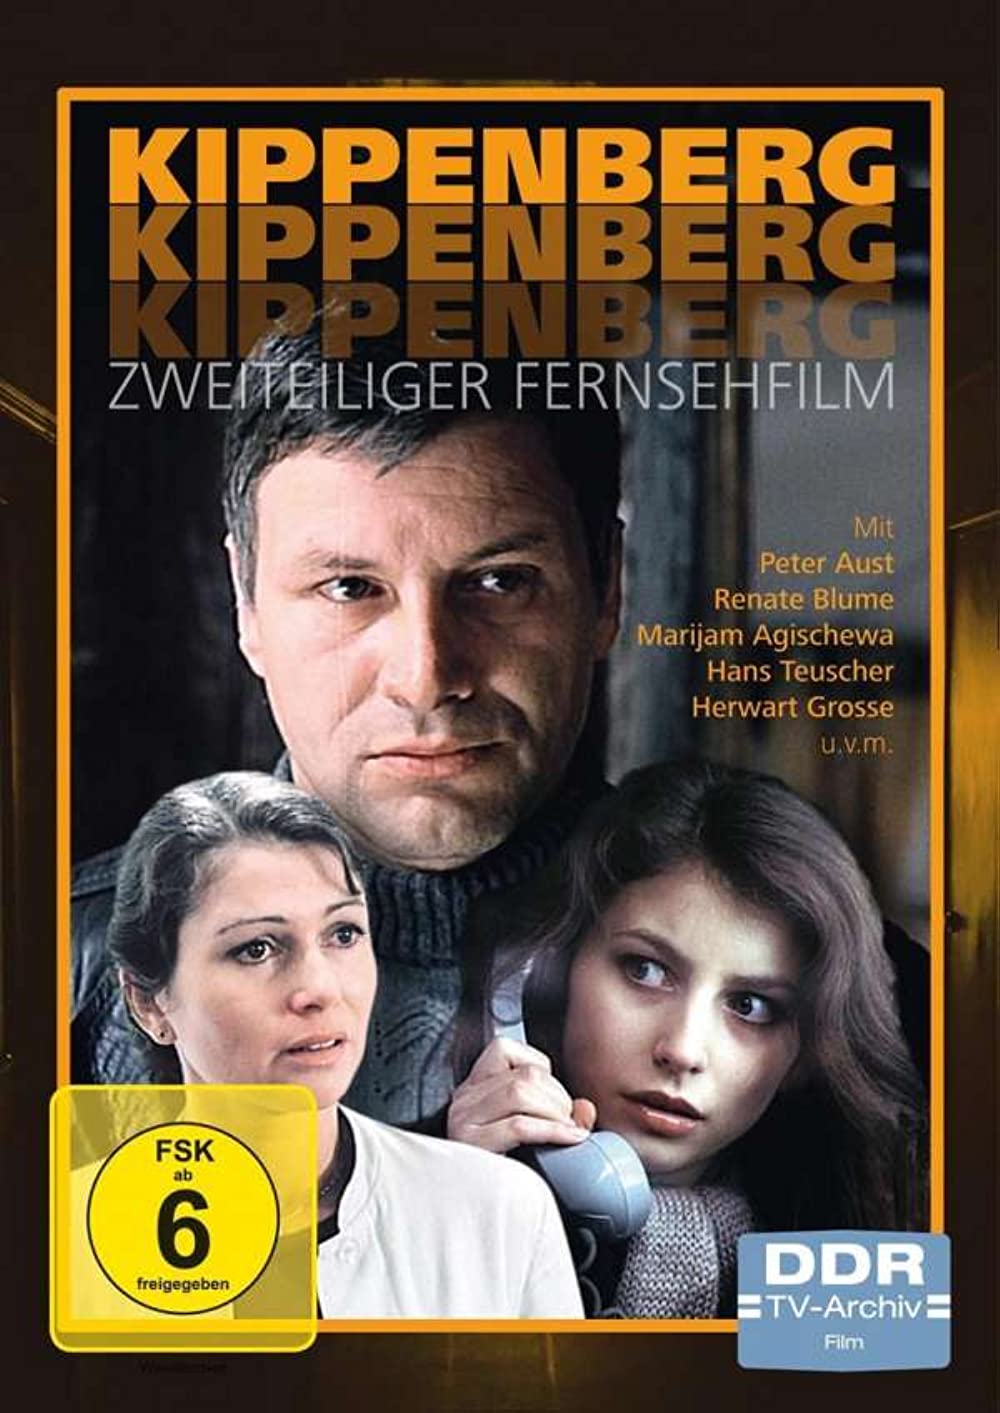 Filmbeschreibung zu Kippenberg